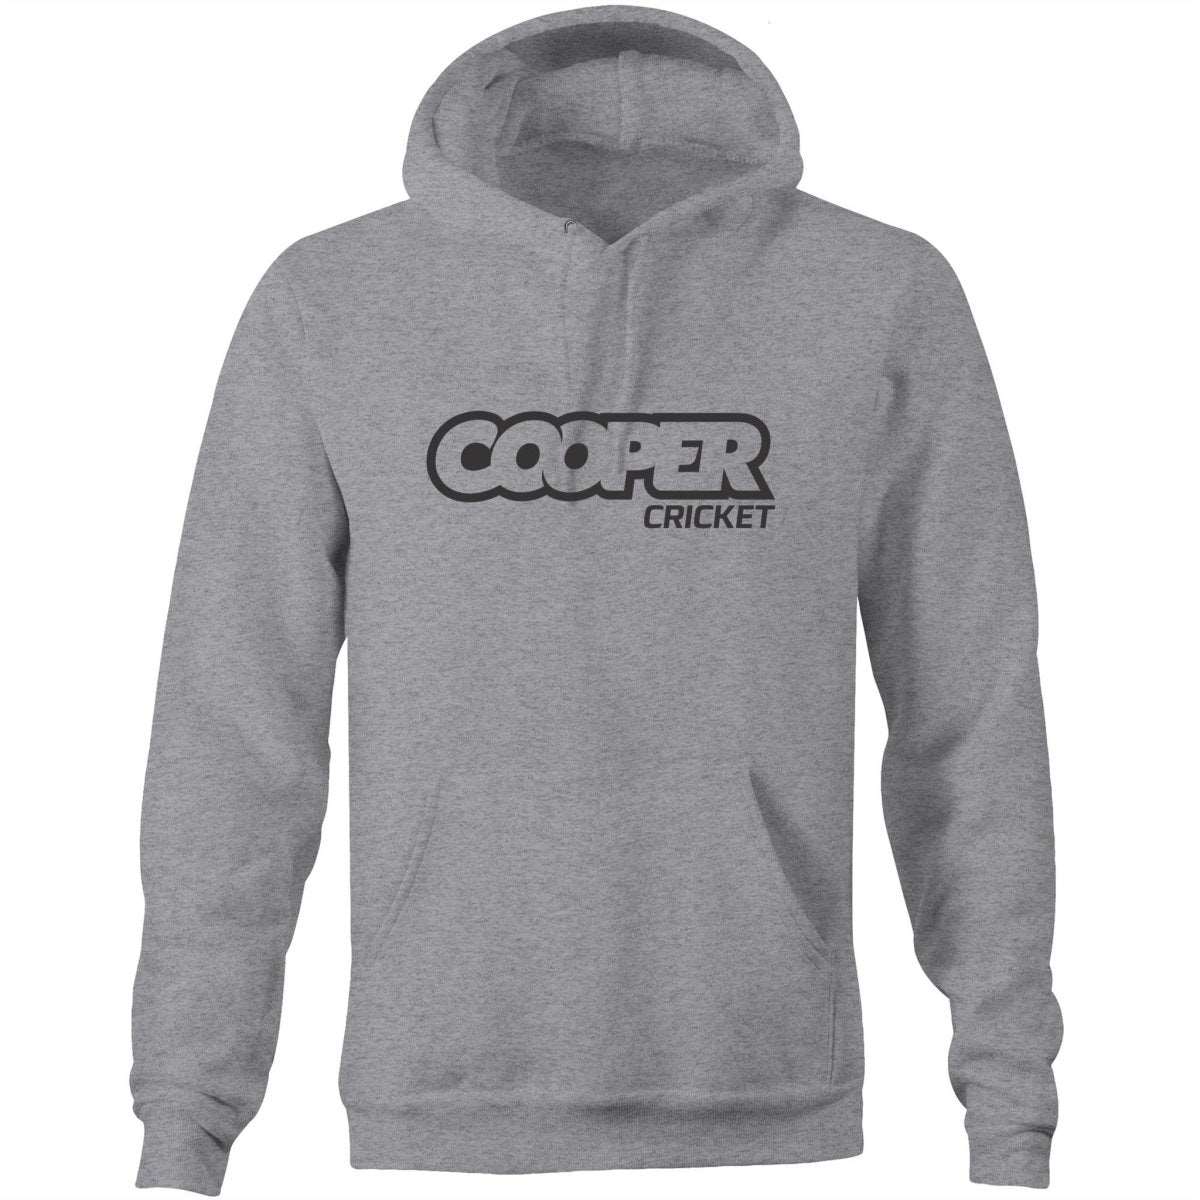 COOPER CRICKET HOODIE - Cooper Cricket